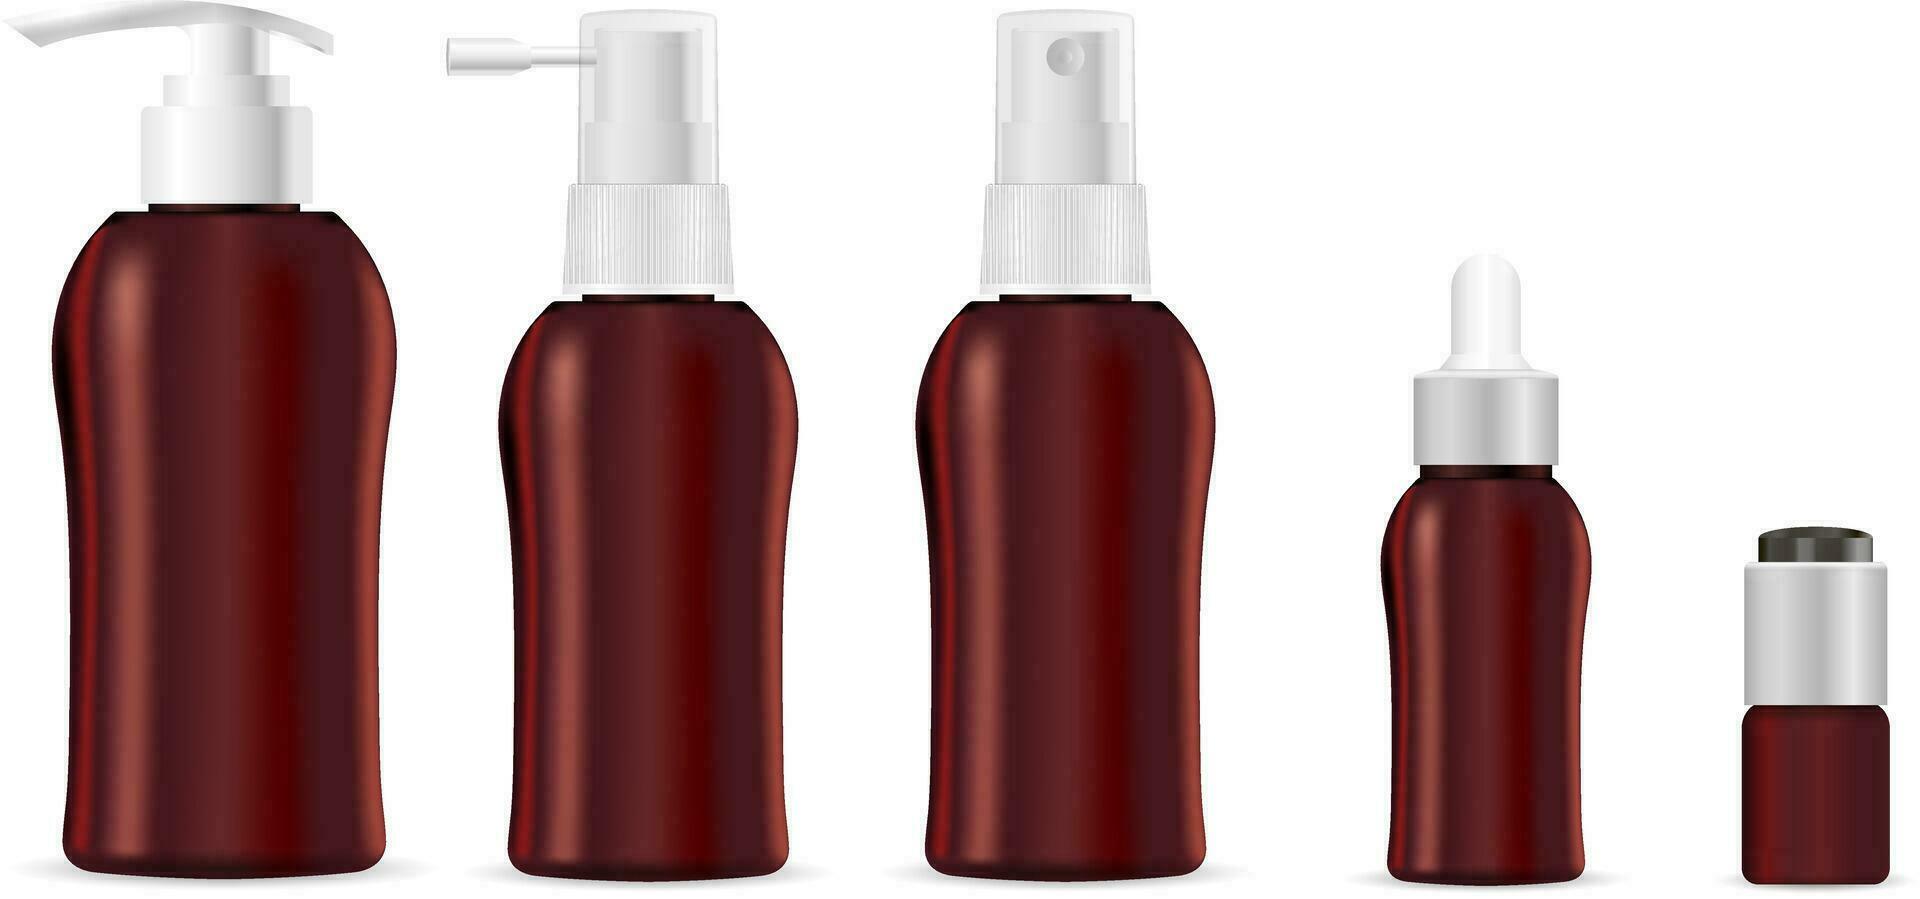 réaliste marron cosmétique bouteilles avec distributeur pompe pour liquide crème , pommade, lotion, shampooing, savon, huile. vecteur moquer en haut modèle.